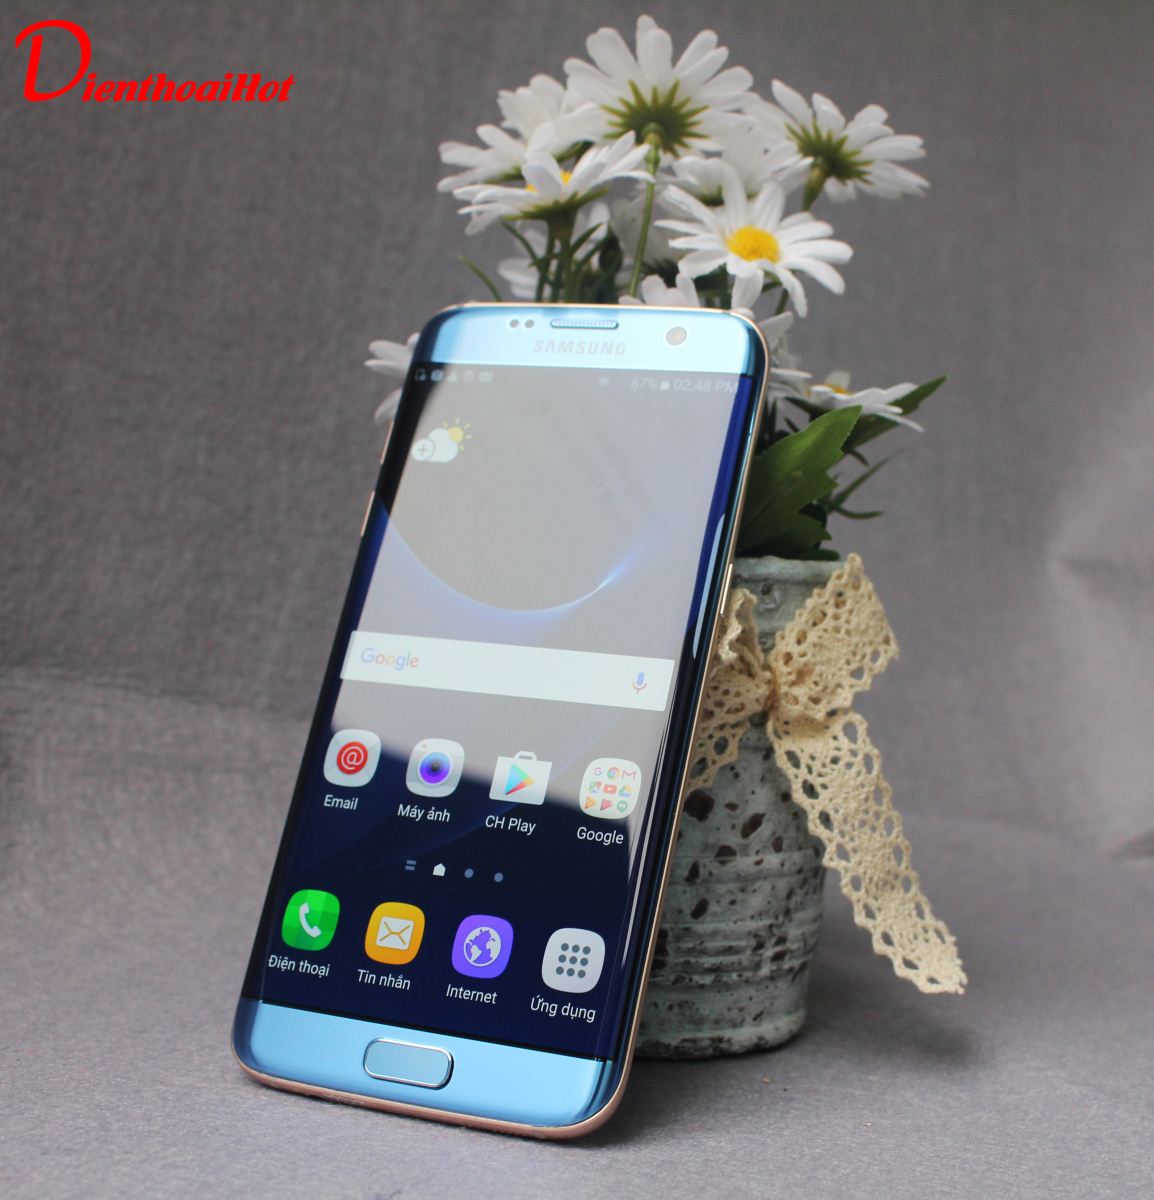 Samsung Galaxy S7 Edge Blue Coral ( Xanh Ngọc )